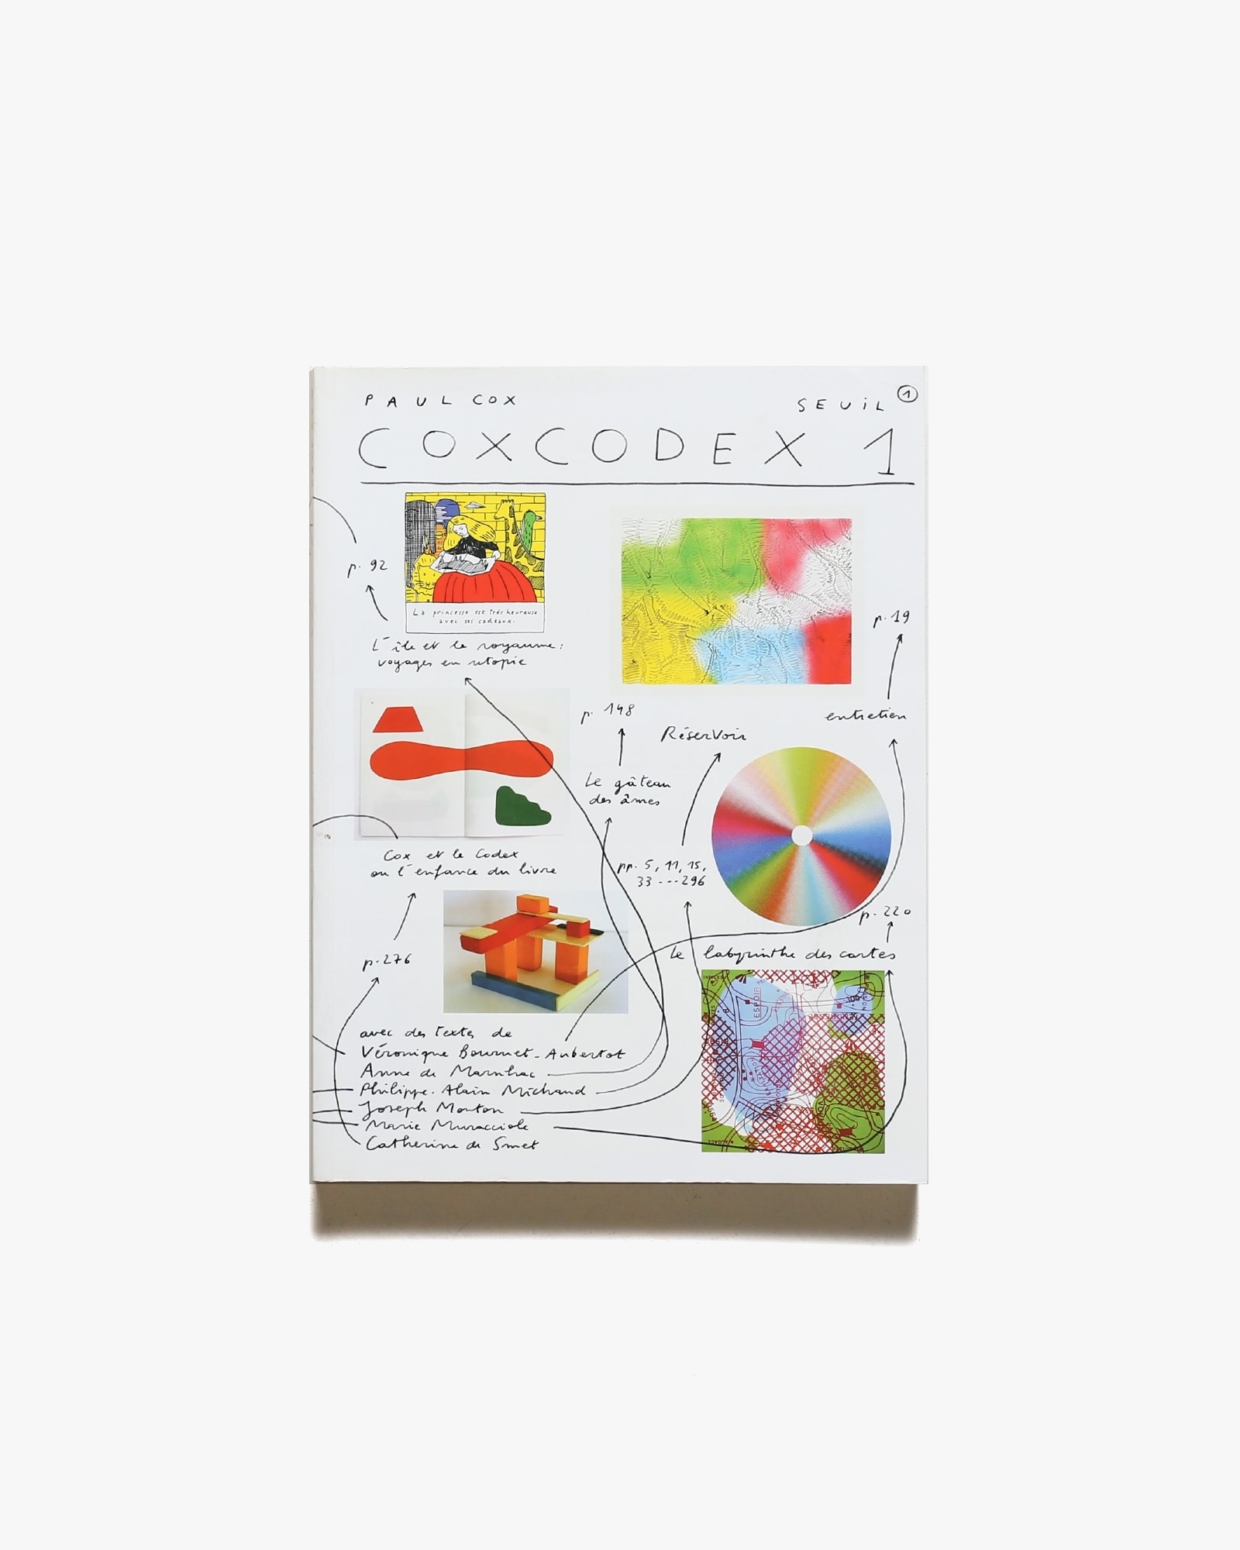 Coxcodex 1 | Paul Cox ポール・コックス